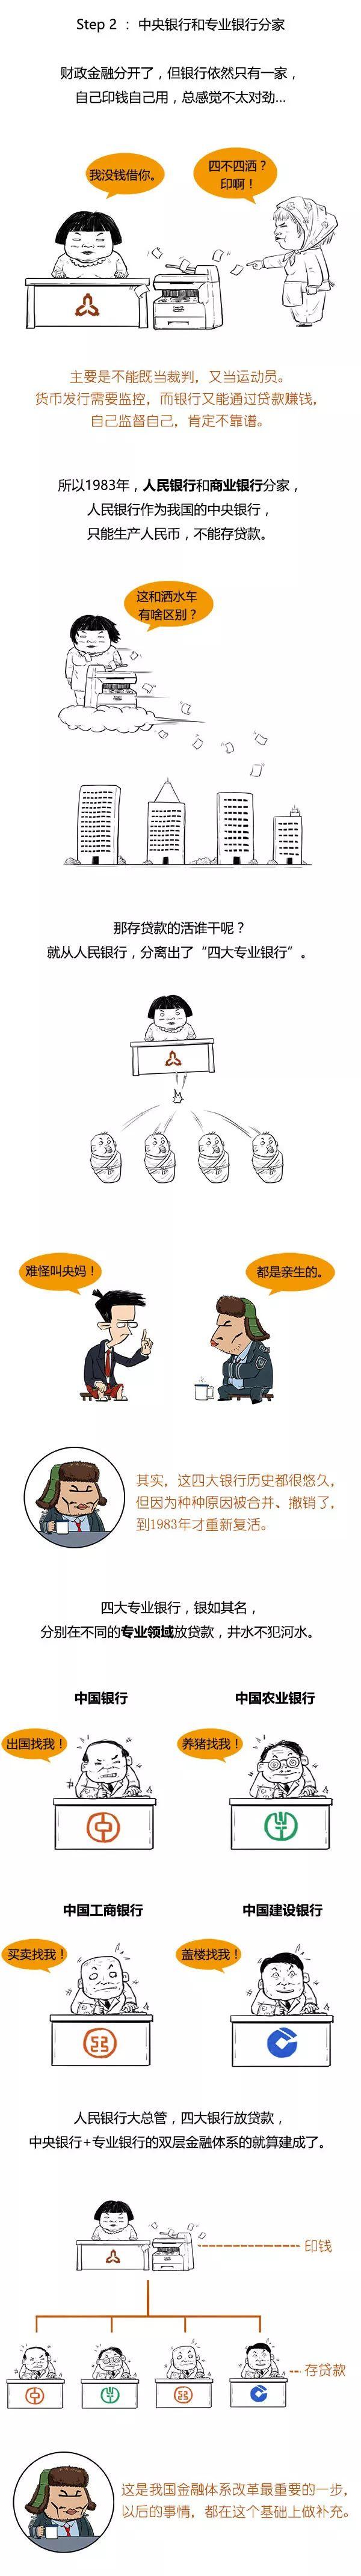 漫画 | 一文读懂中国各银行的来源